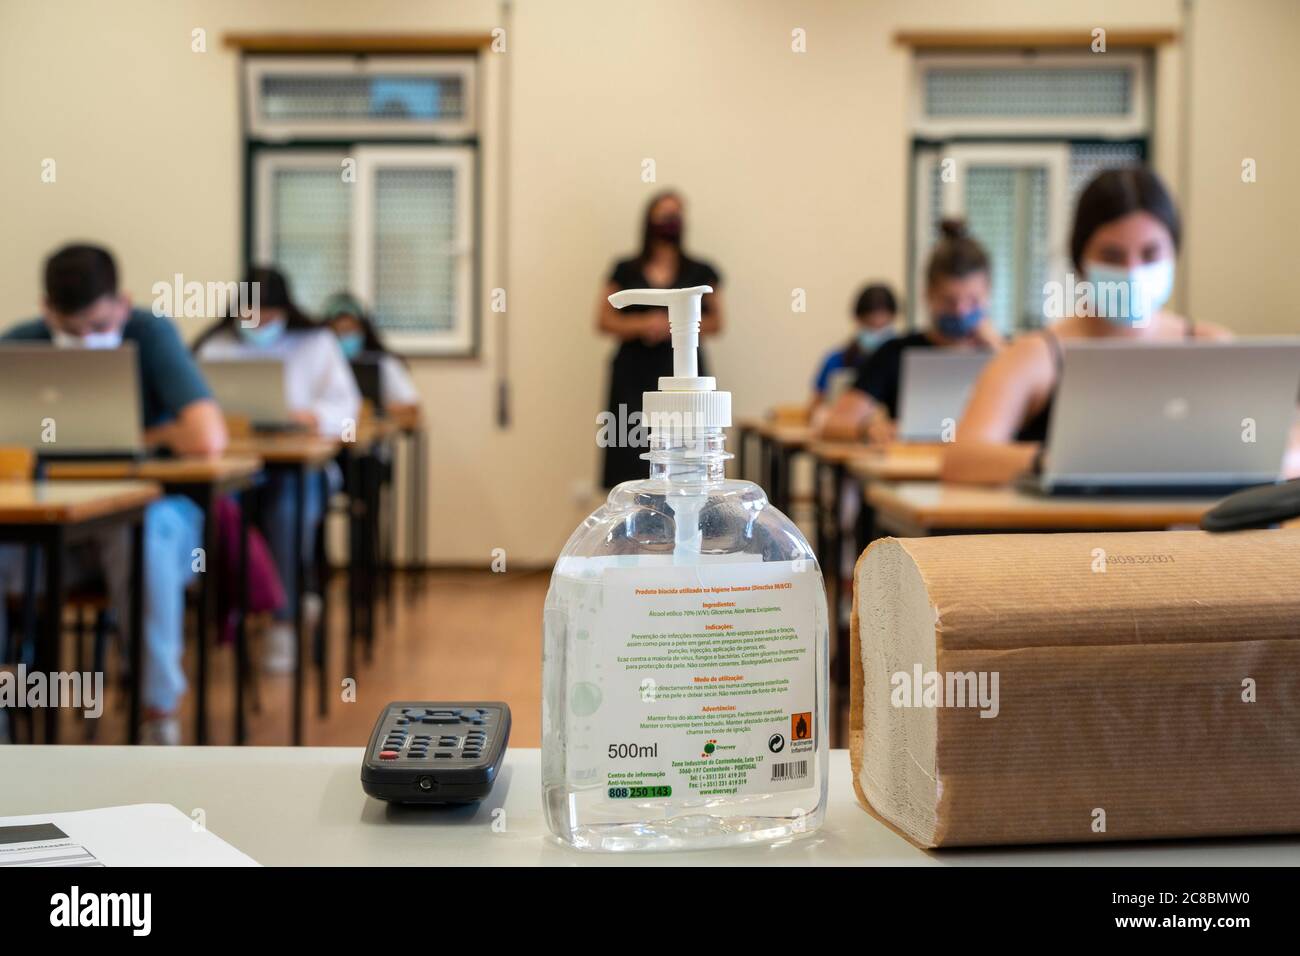 Bouteille de désinfectant pour les mains devant les élèves portant des masques faciaux en classe pendant la nouvelle pandémie de coronavirus COVID-19 Banque D'Images